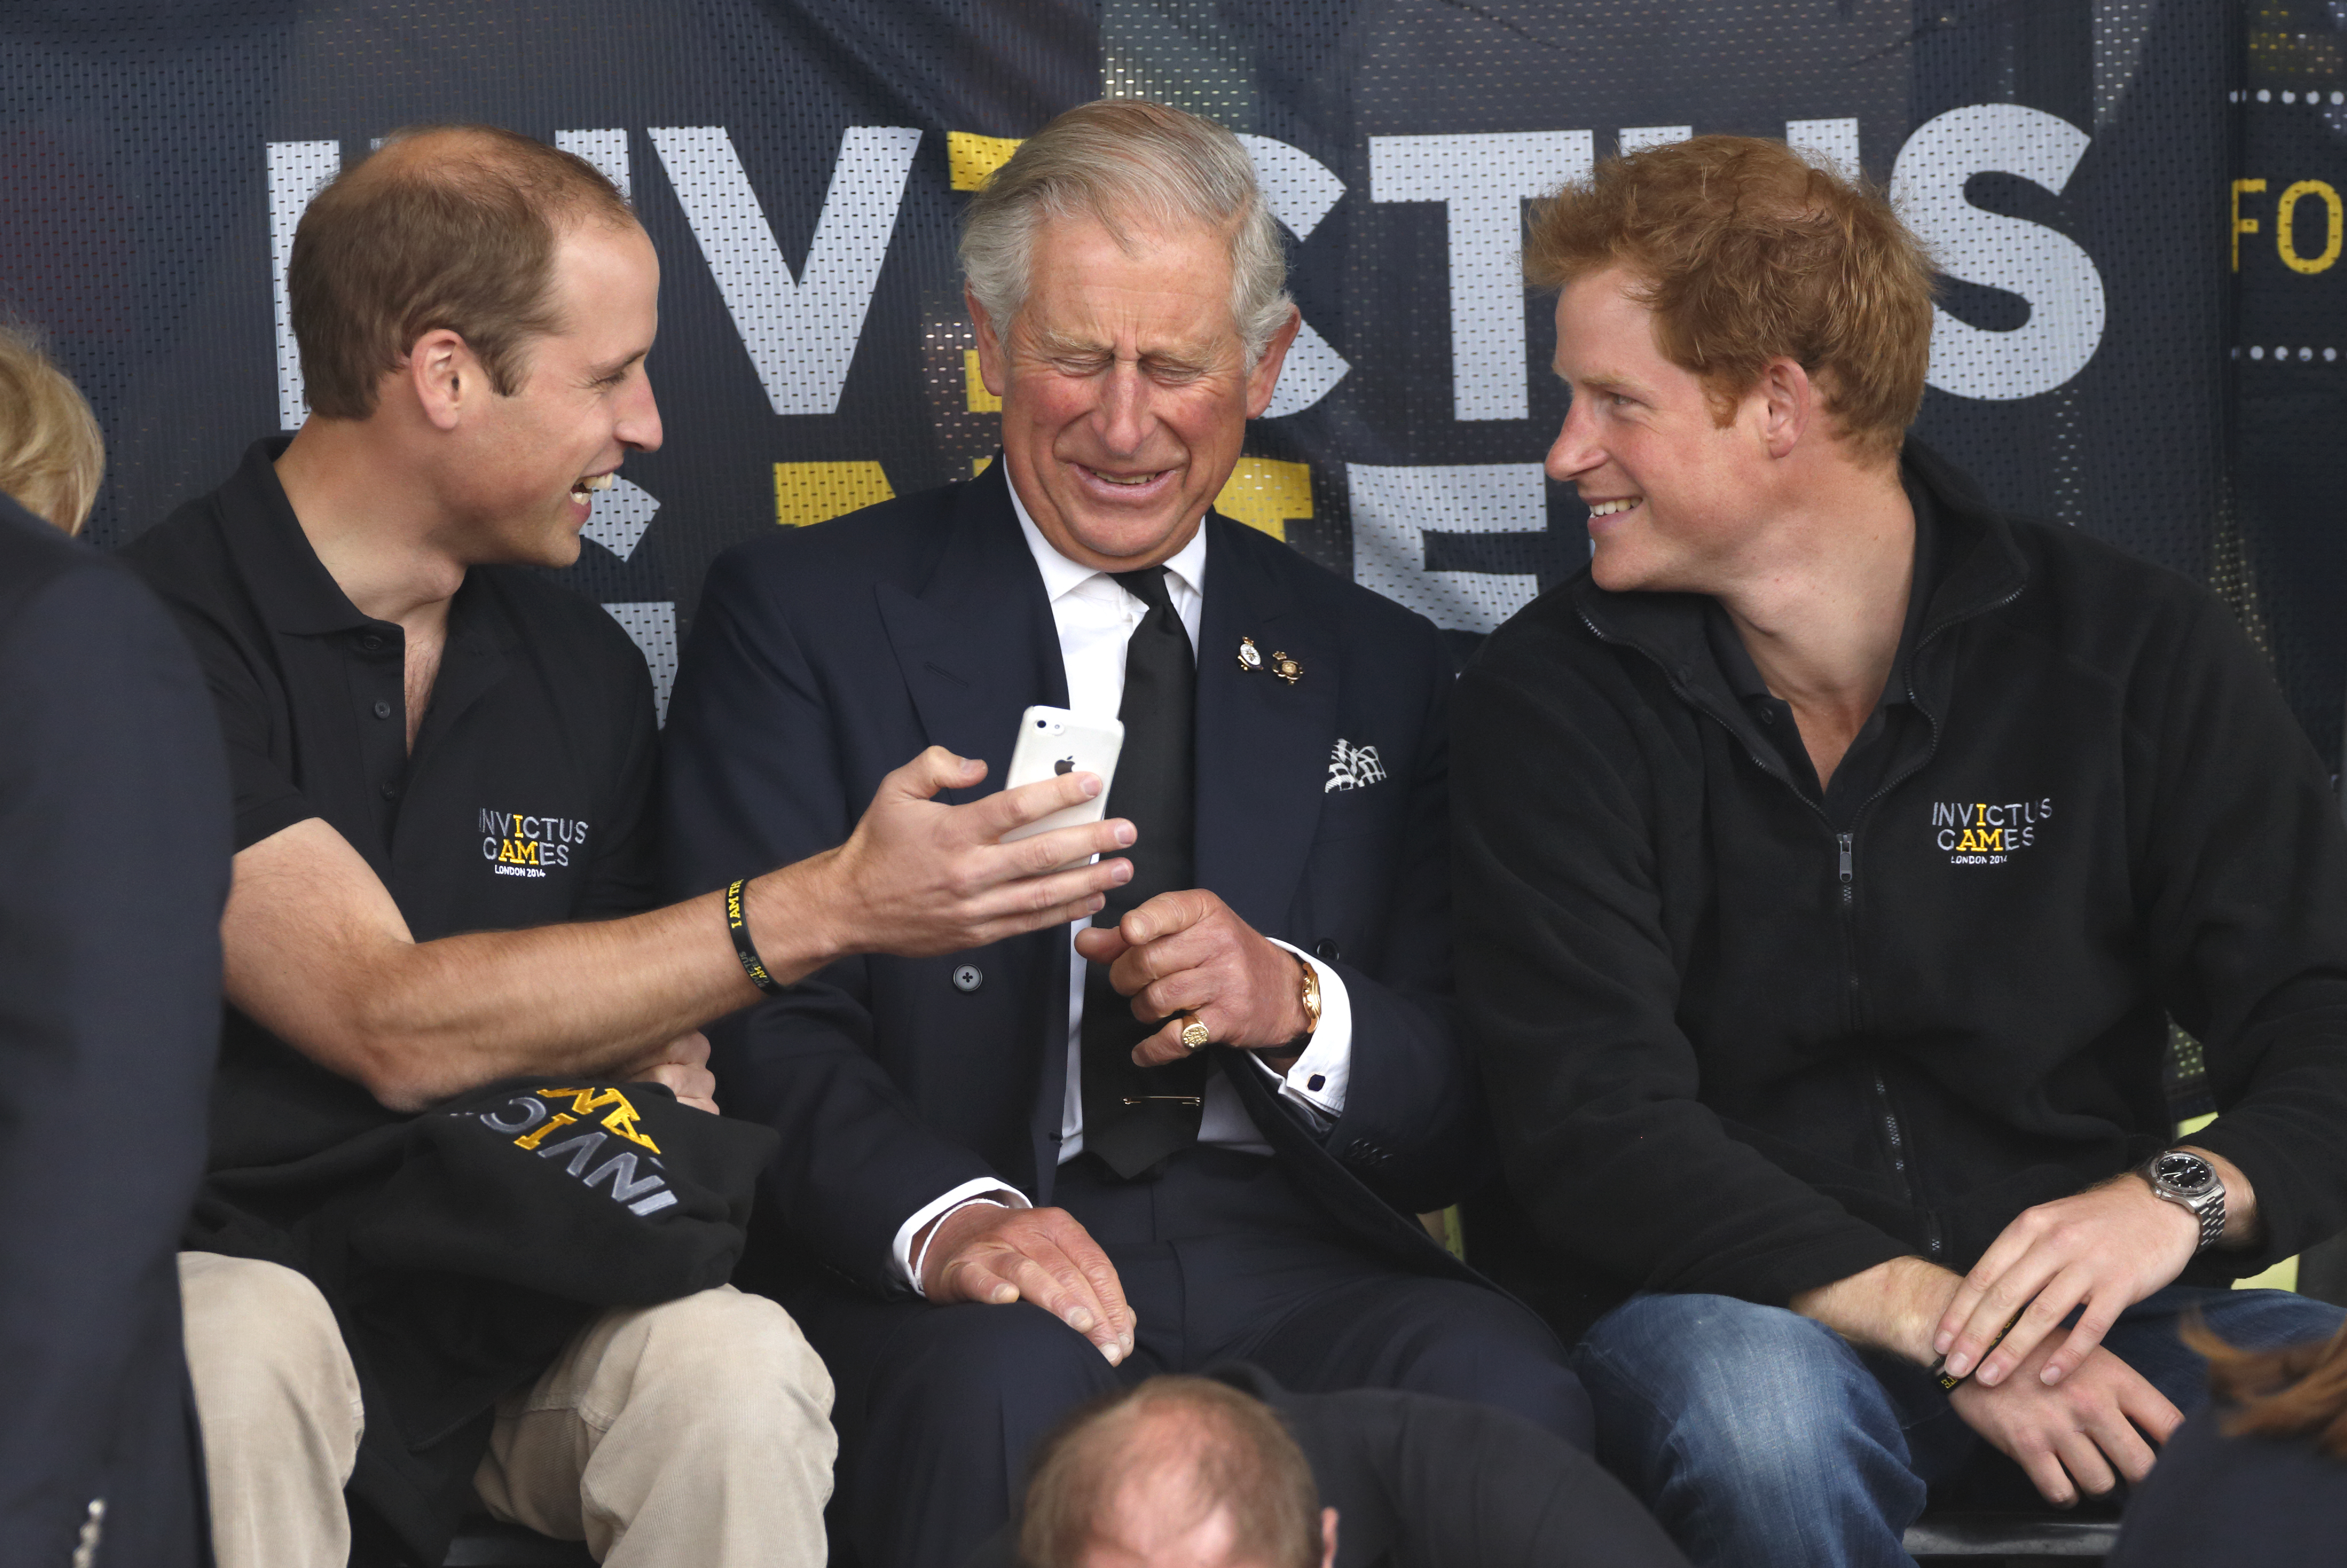 Le prince William, le prince Charles et le prince Harry assistent aux Invictus Games le 11 septembre 2014 à Londres, en Angleterre | Source : Getty Images